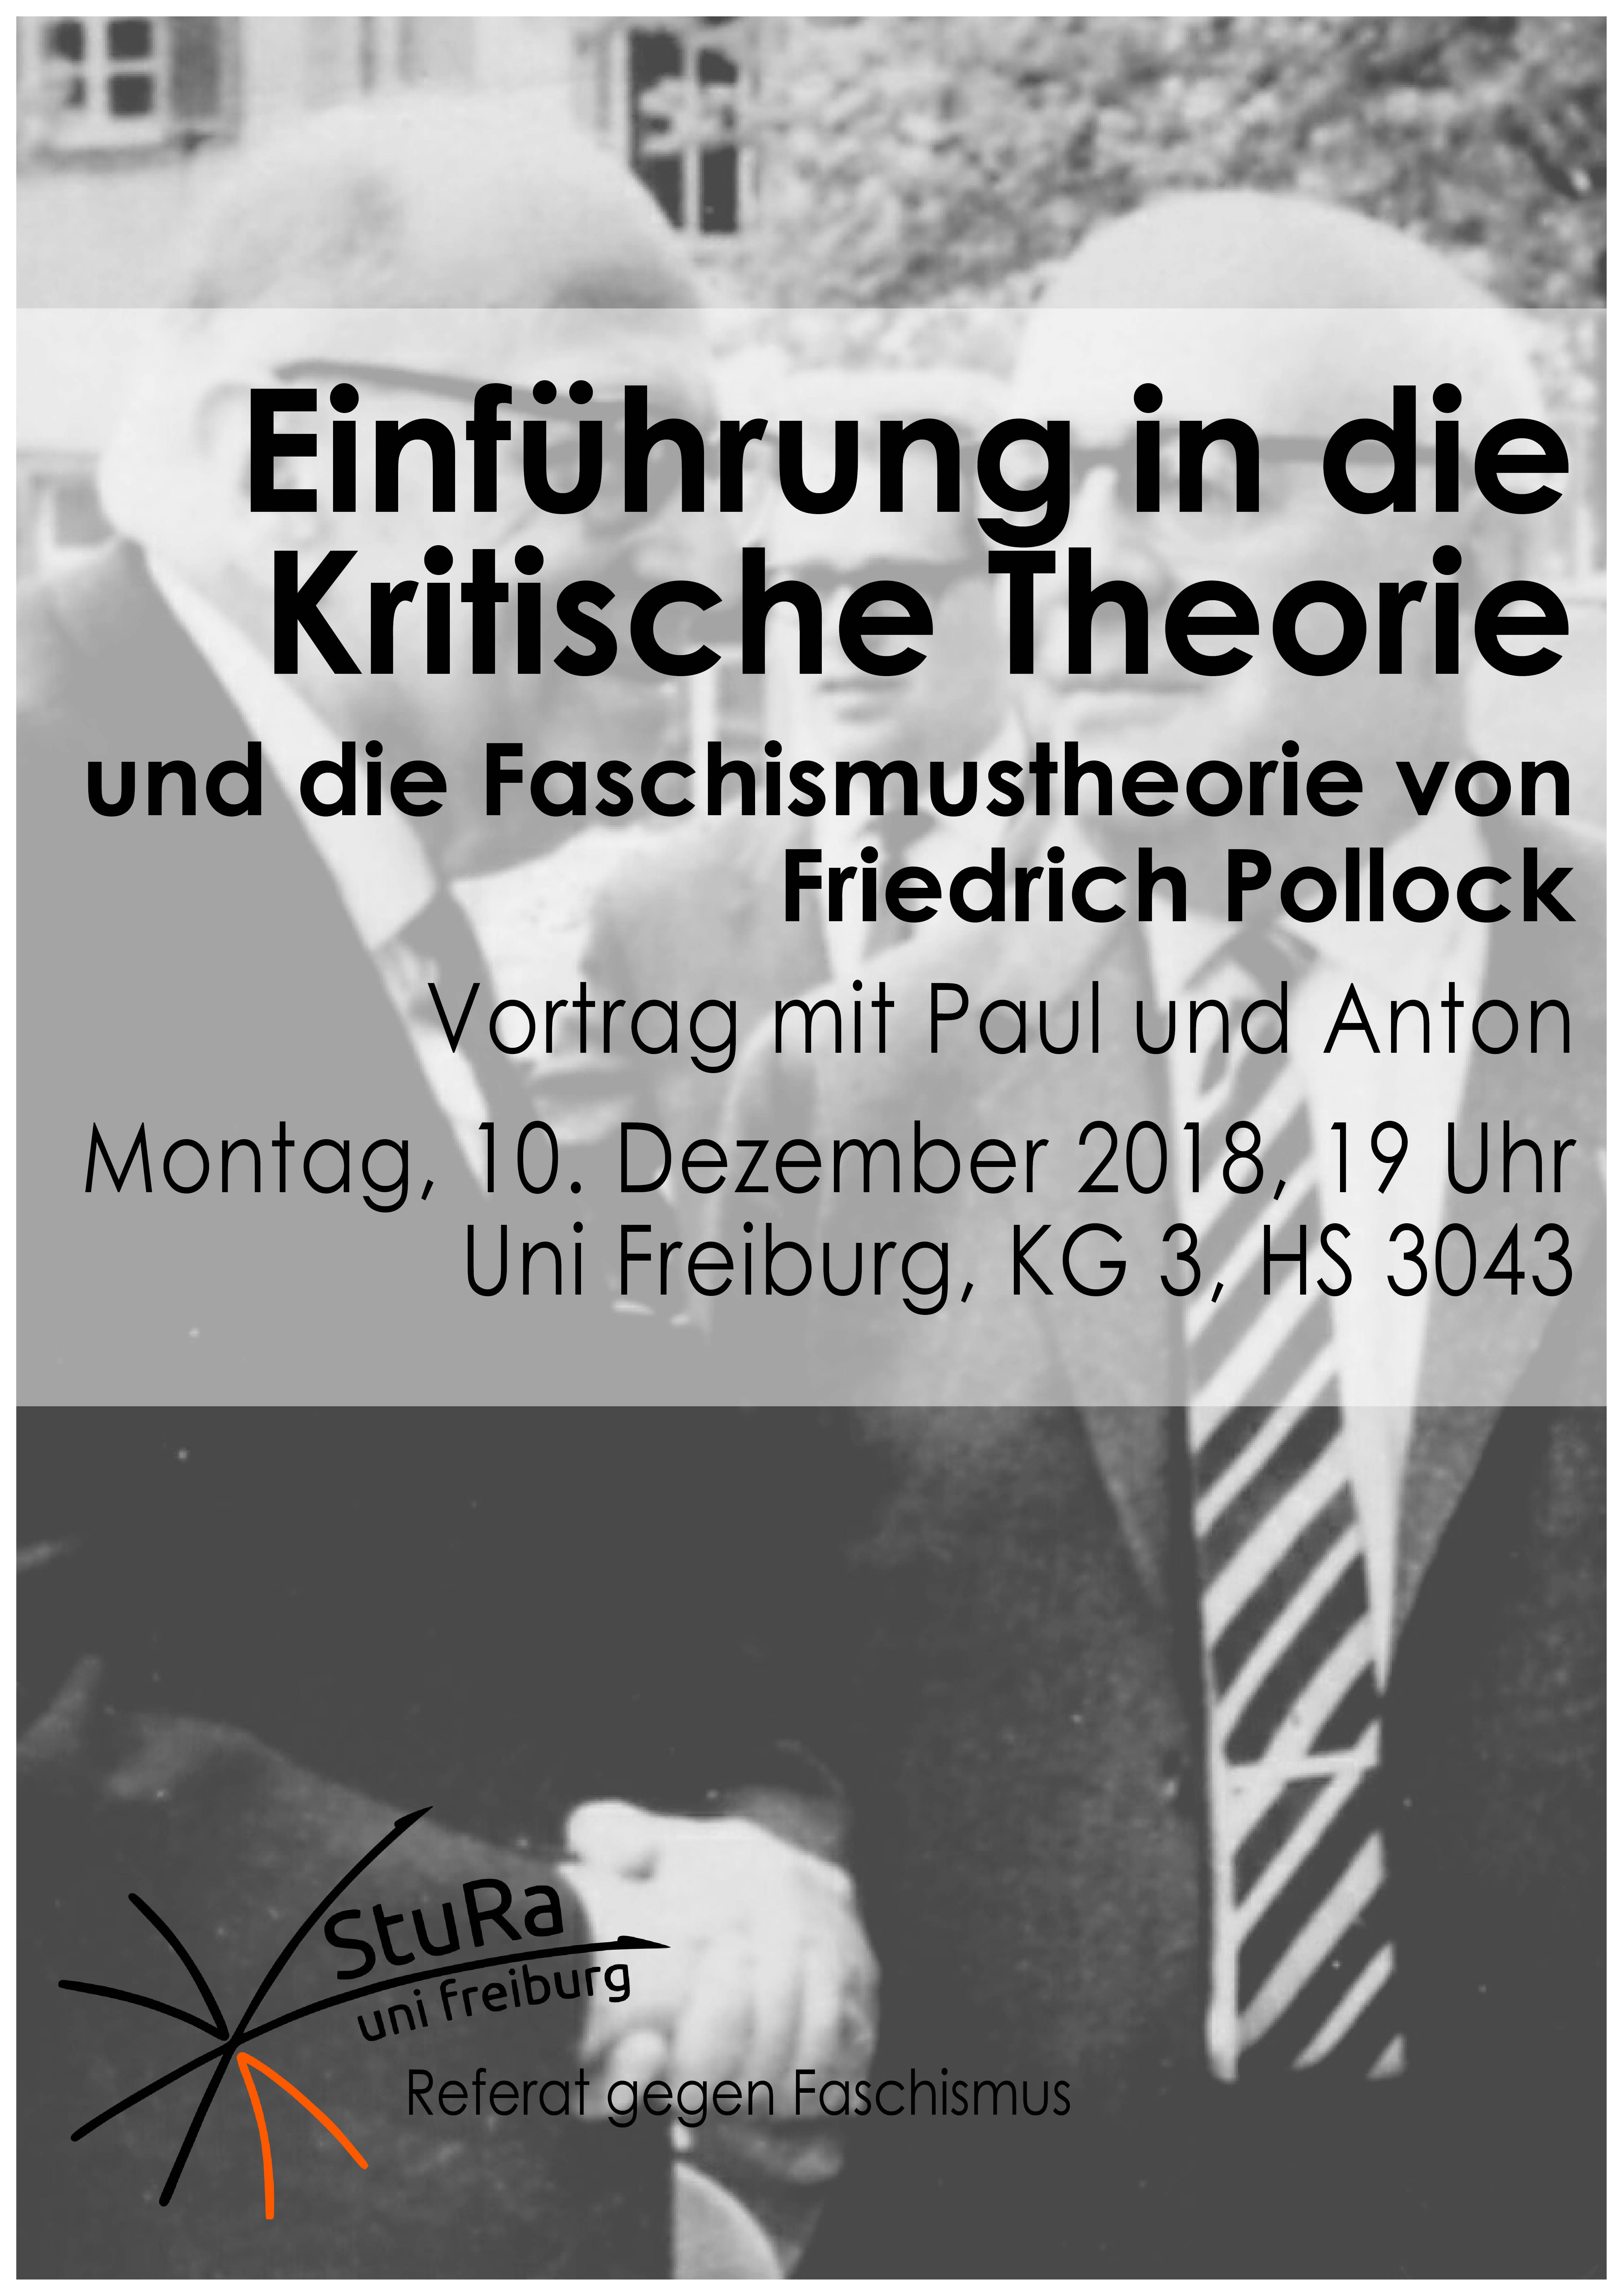 Plakat für einen Vortrag zur Kritischen Theorie am 10.12.18